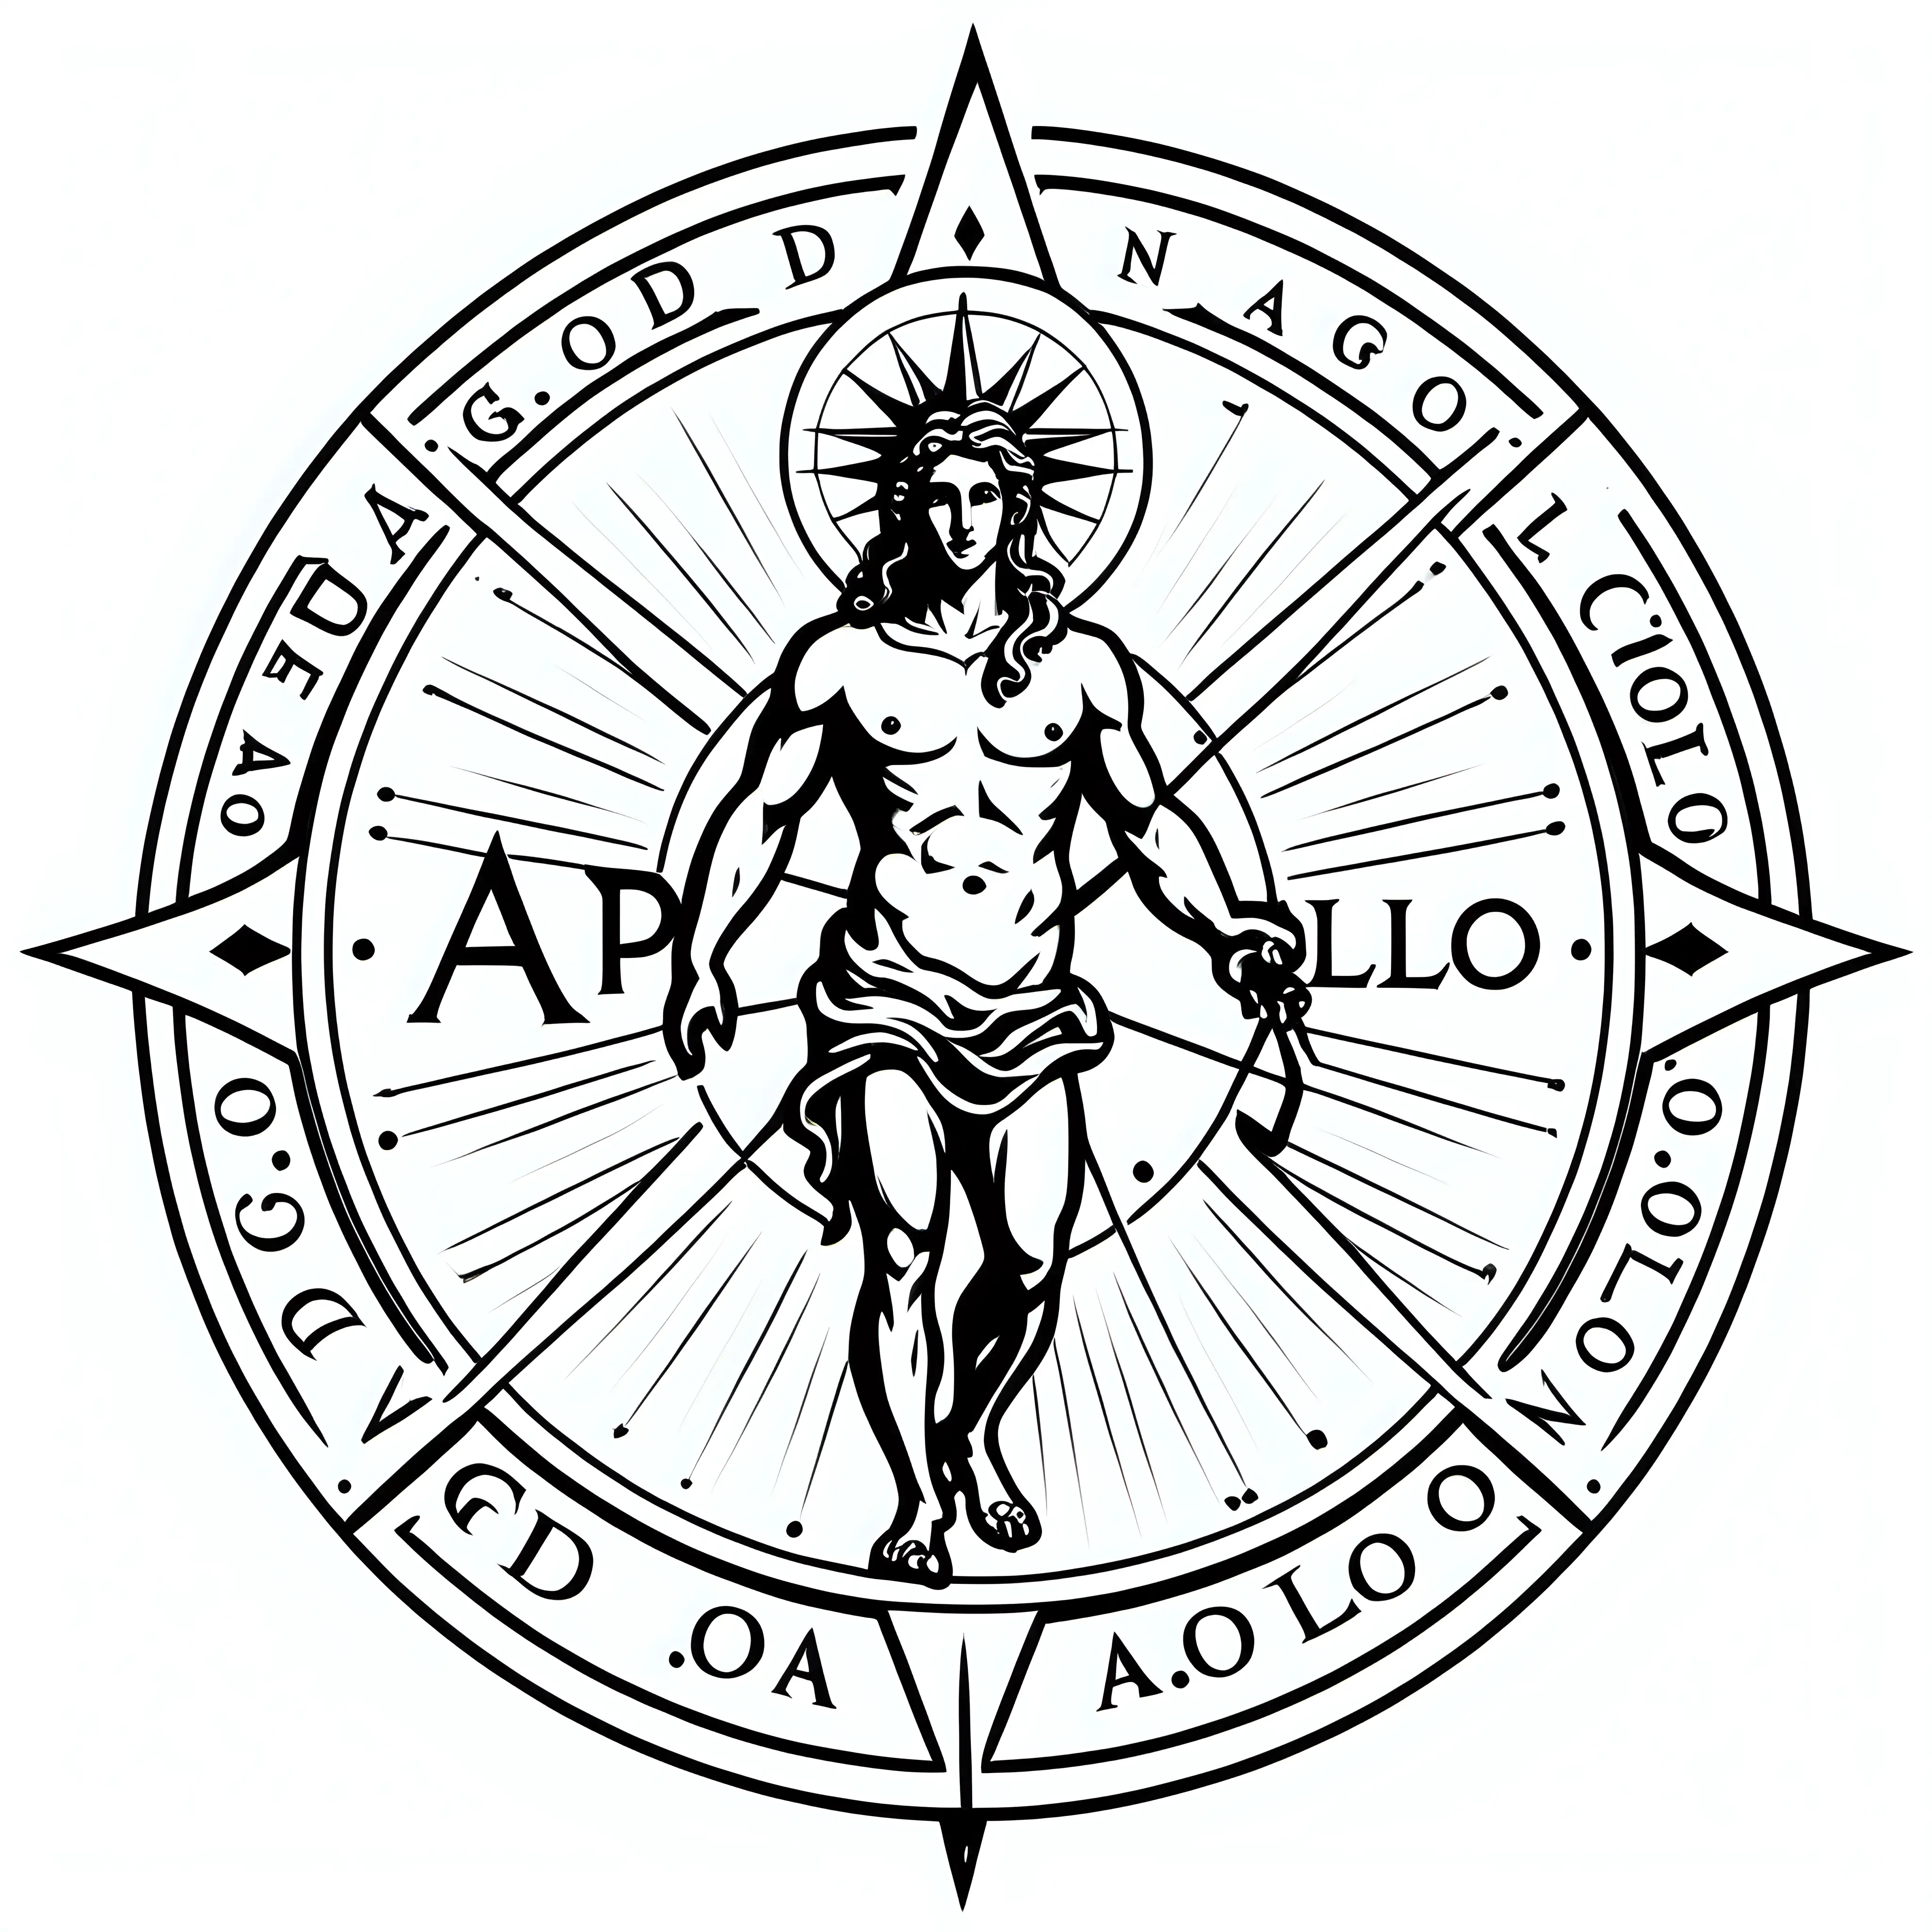 God Apolon, in a compas, outline, logo